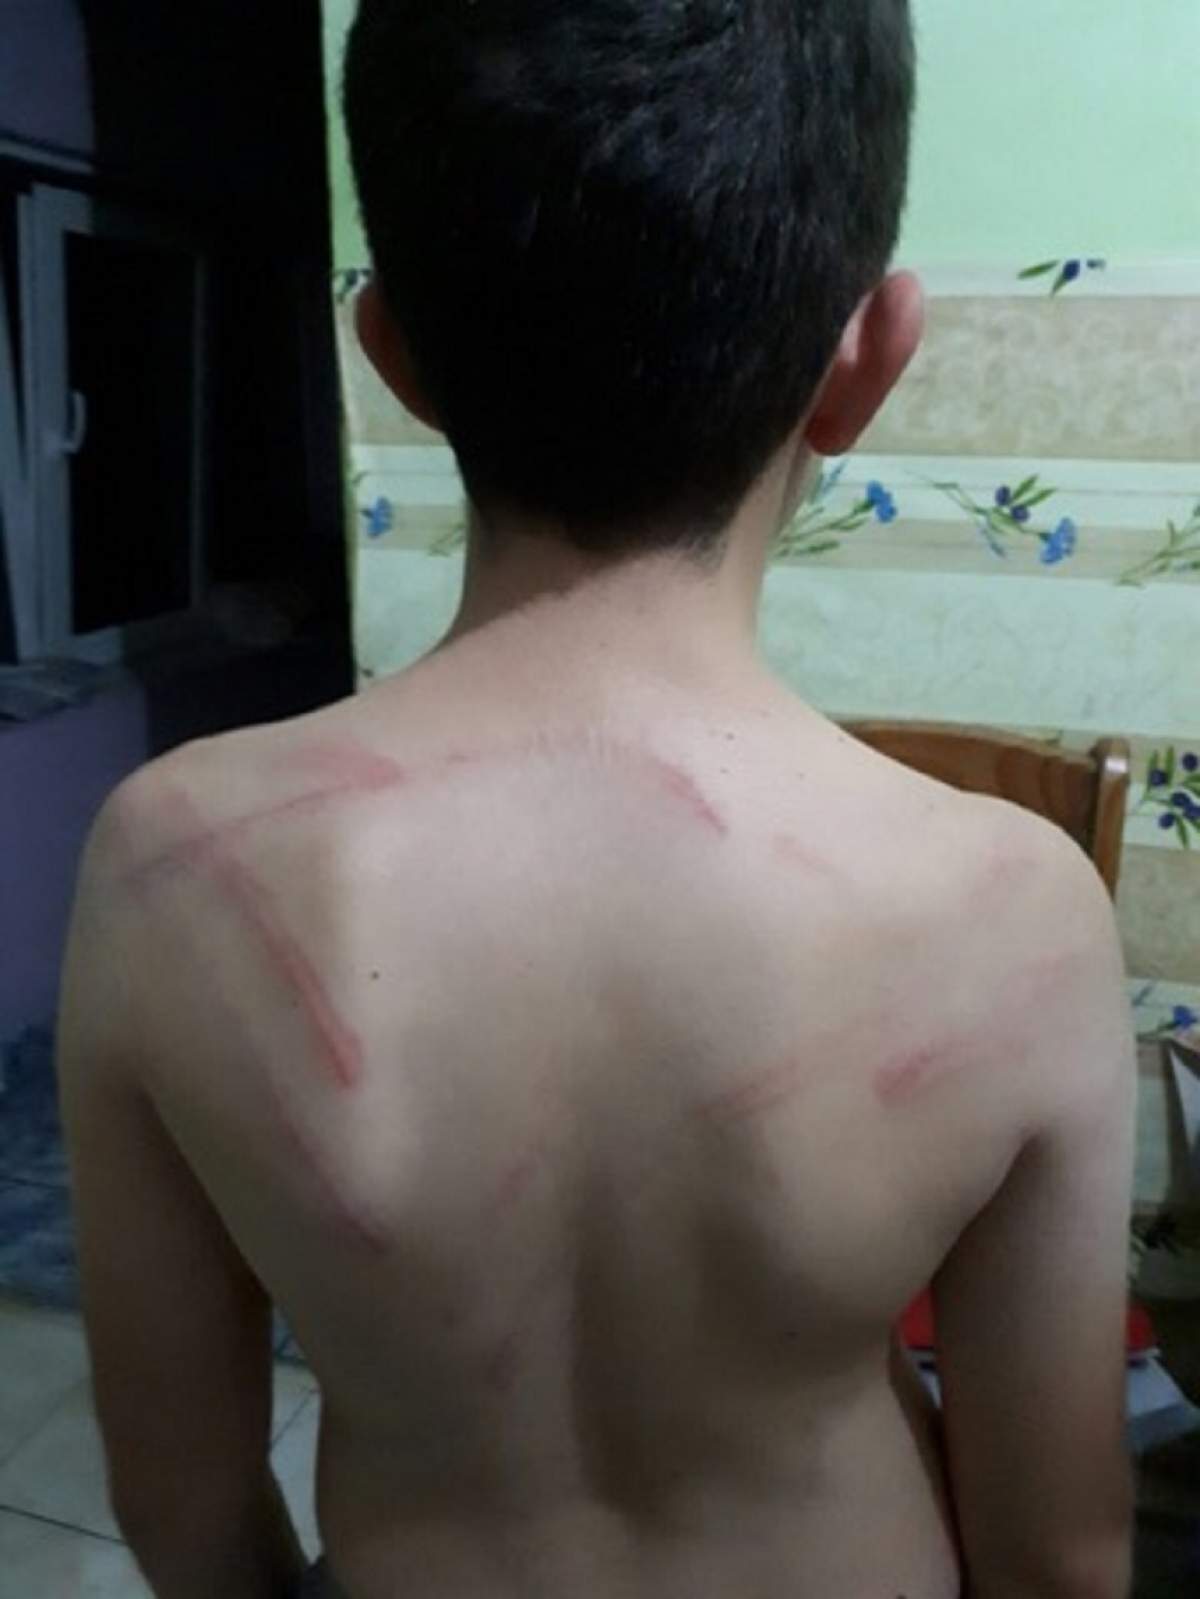 FOTO / Incredibil! Un băiat de 9 ani din Arad a fost bătut crunt de tatăl său! Imaginile sunt şocante